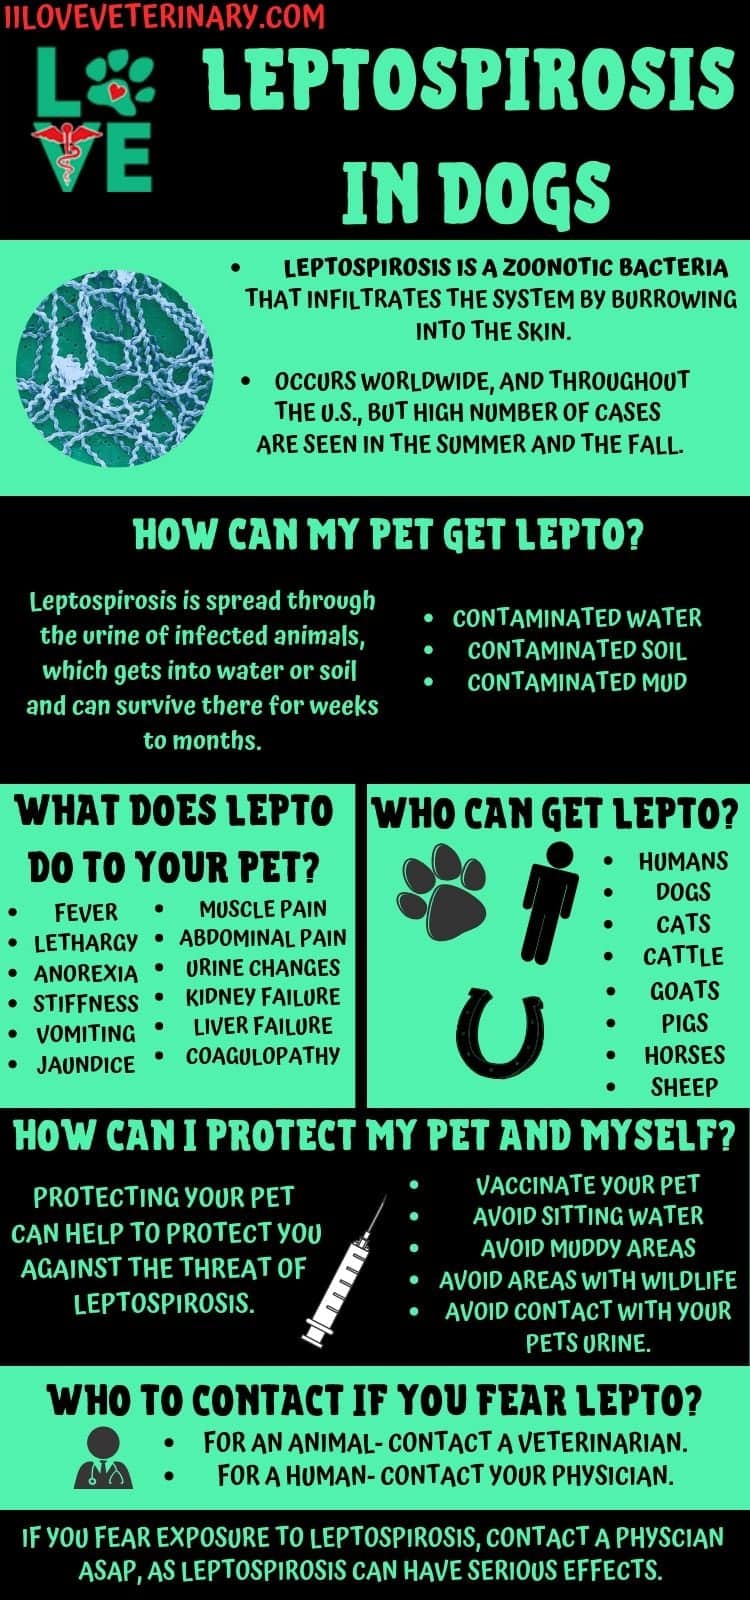 Leptospirosis in Dogs - I Love Veterinary